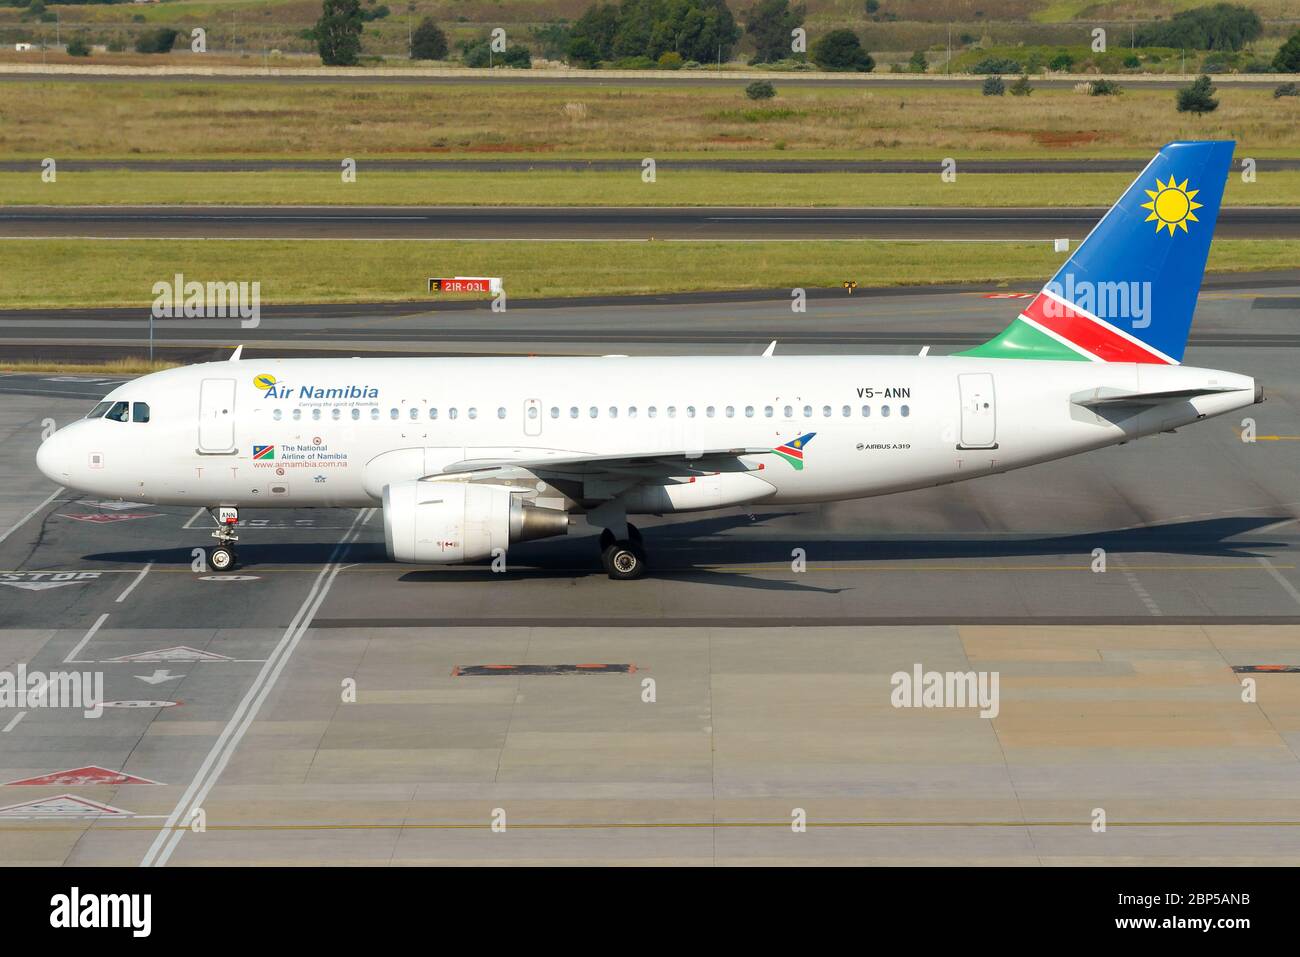 Air Namibia Airbus A319 en train de rouler à l'aéroport international O. R. Tambo de Johannesburg, en Afrique du Sud. Avion enregistré comme V5-ANN. Banque D'Images